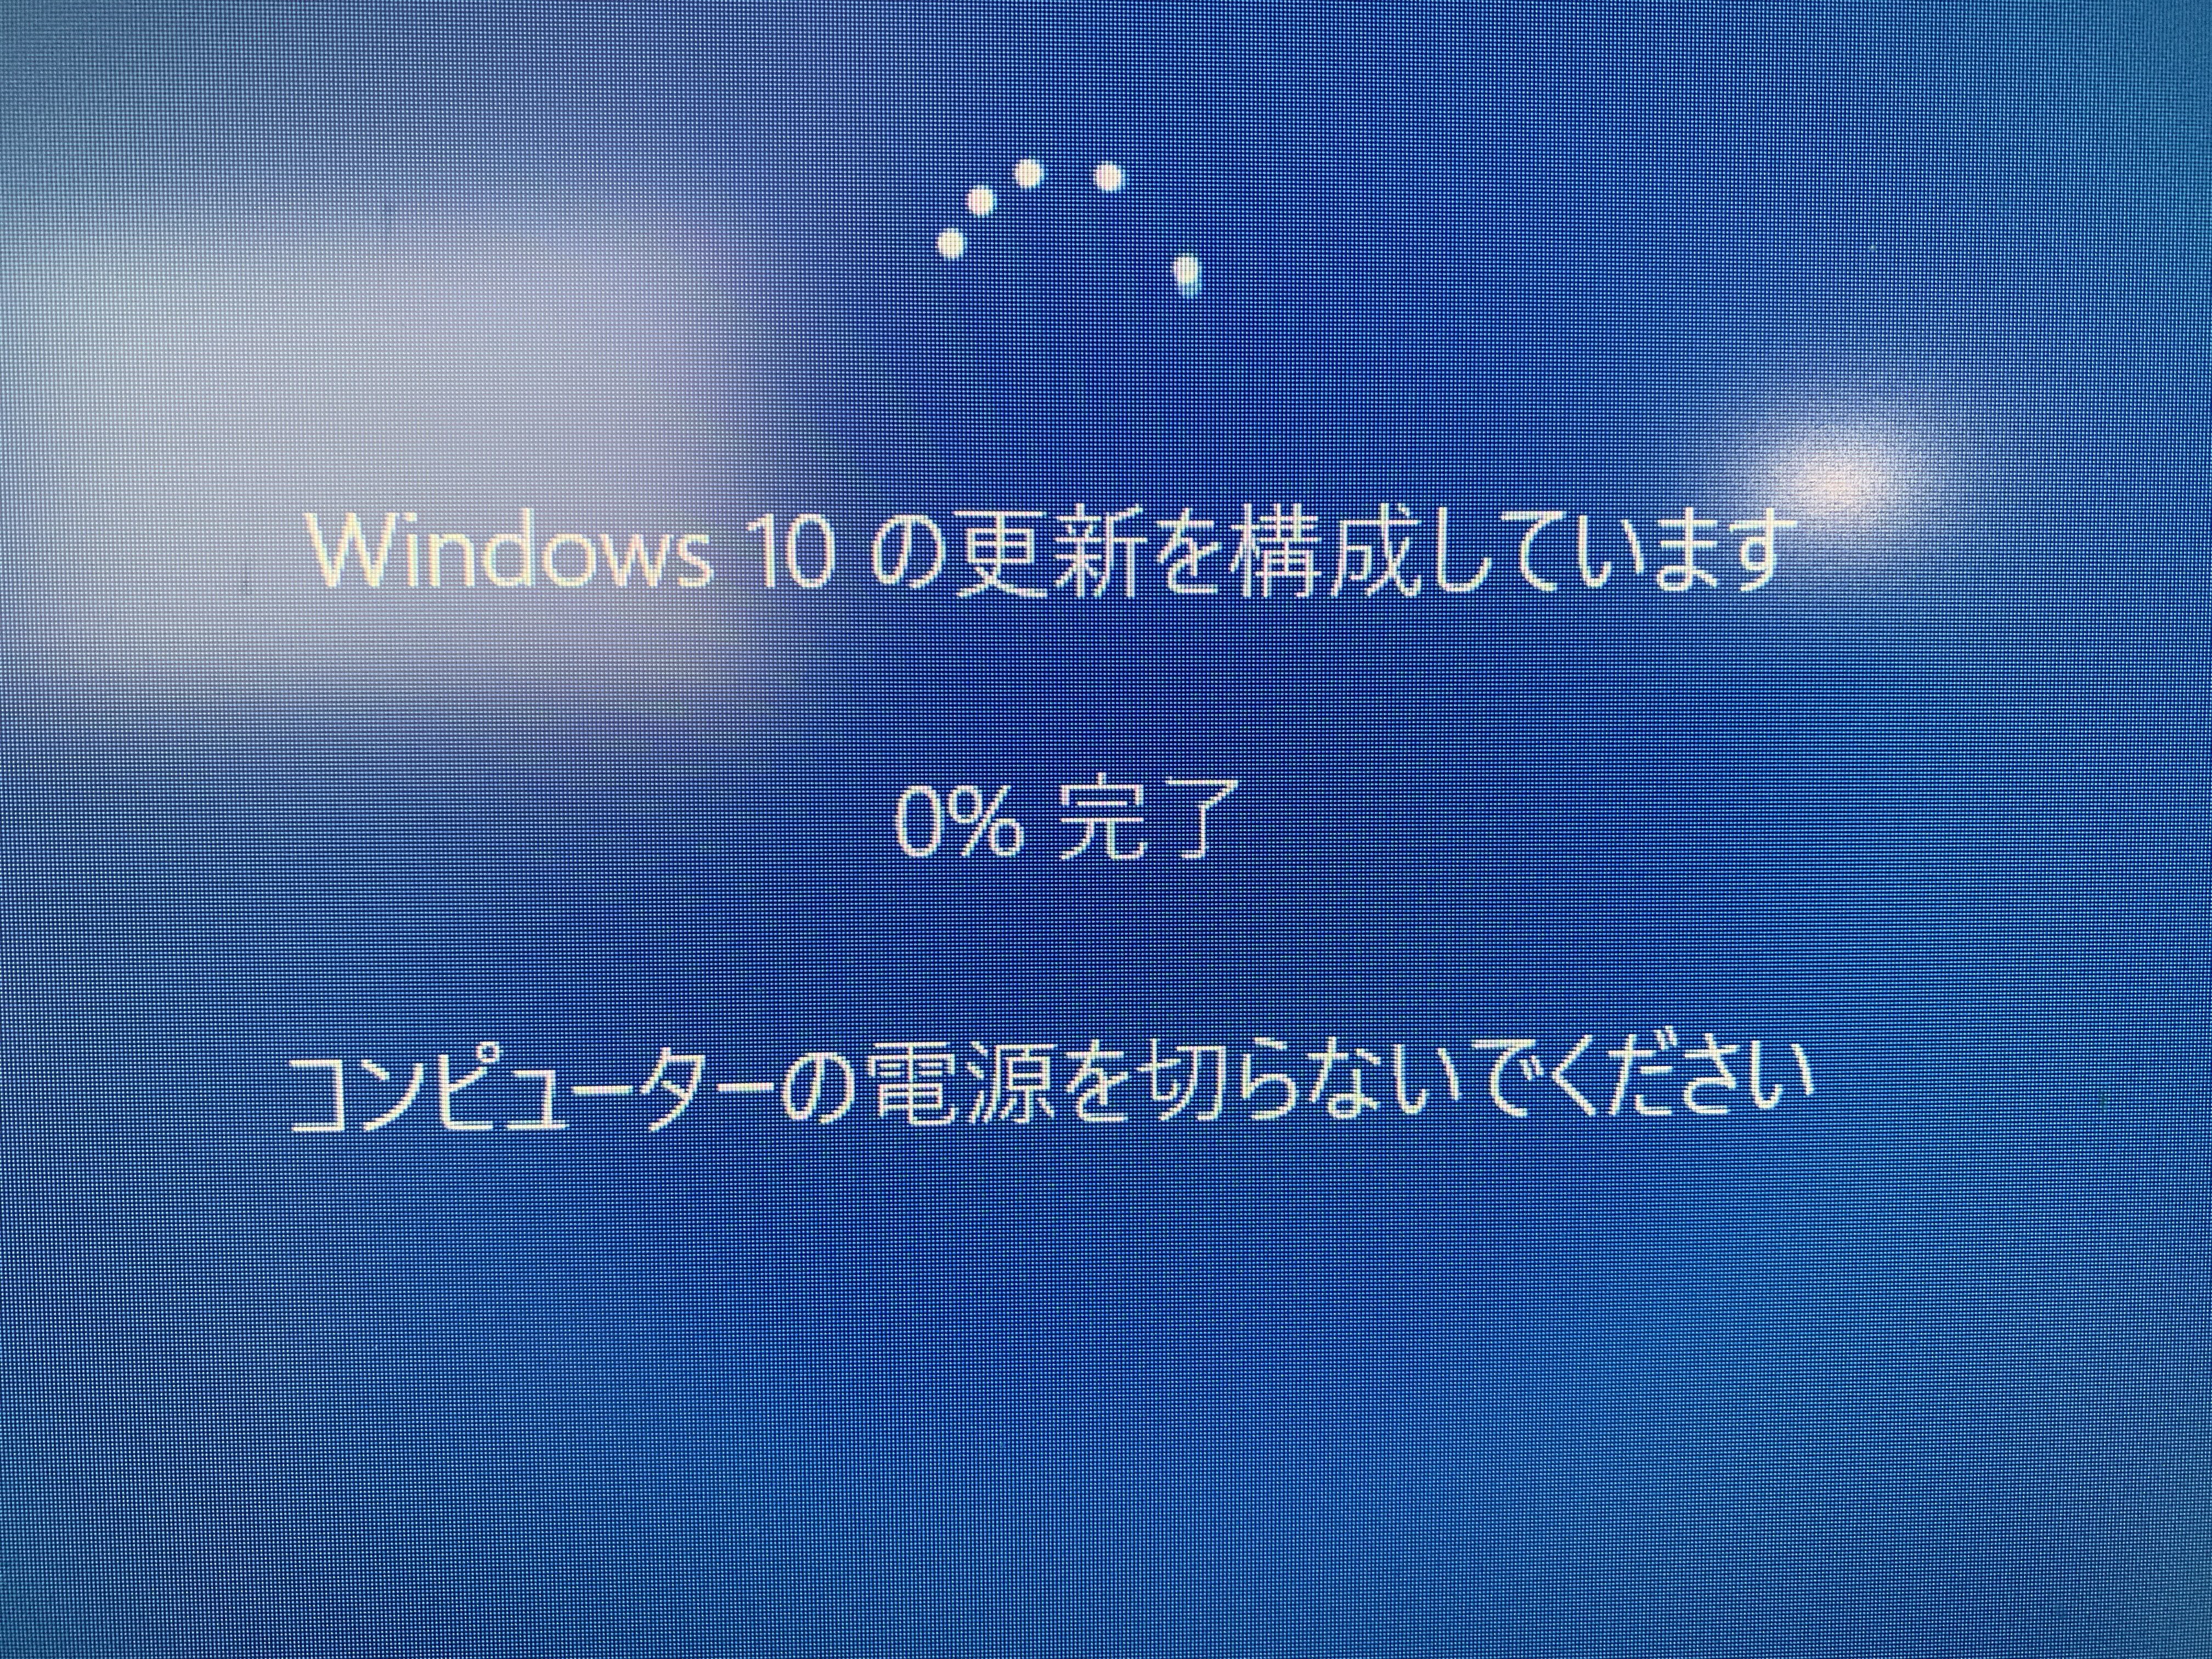 恐る恐る Windows10 Ver1903へ強制執行してみた件